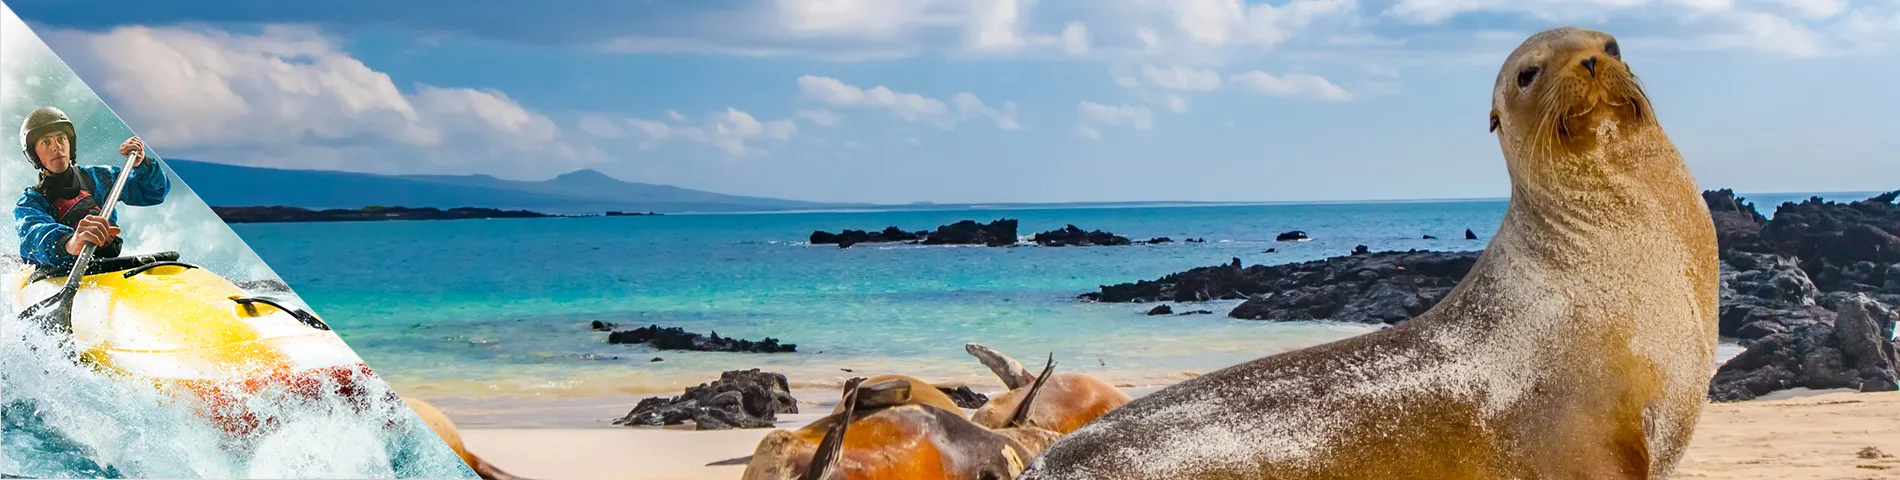 Islas Galápagos - Español + Deportes de Aventura